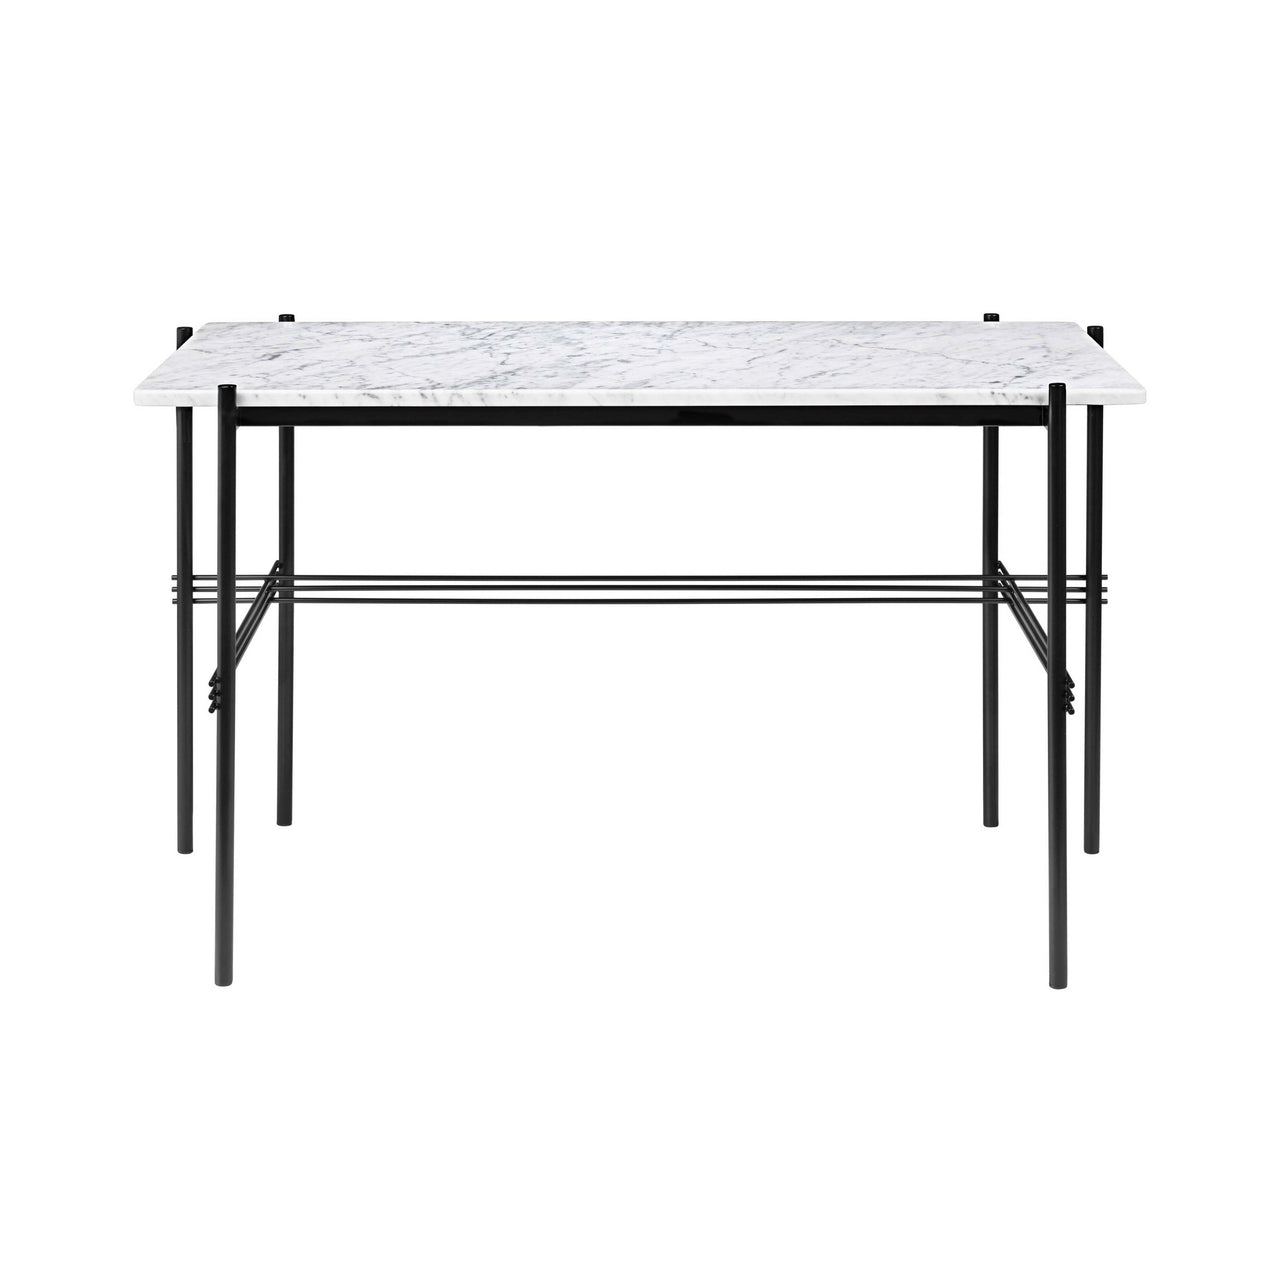 TS Desk: White Carrara